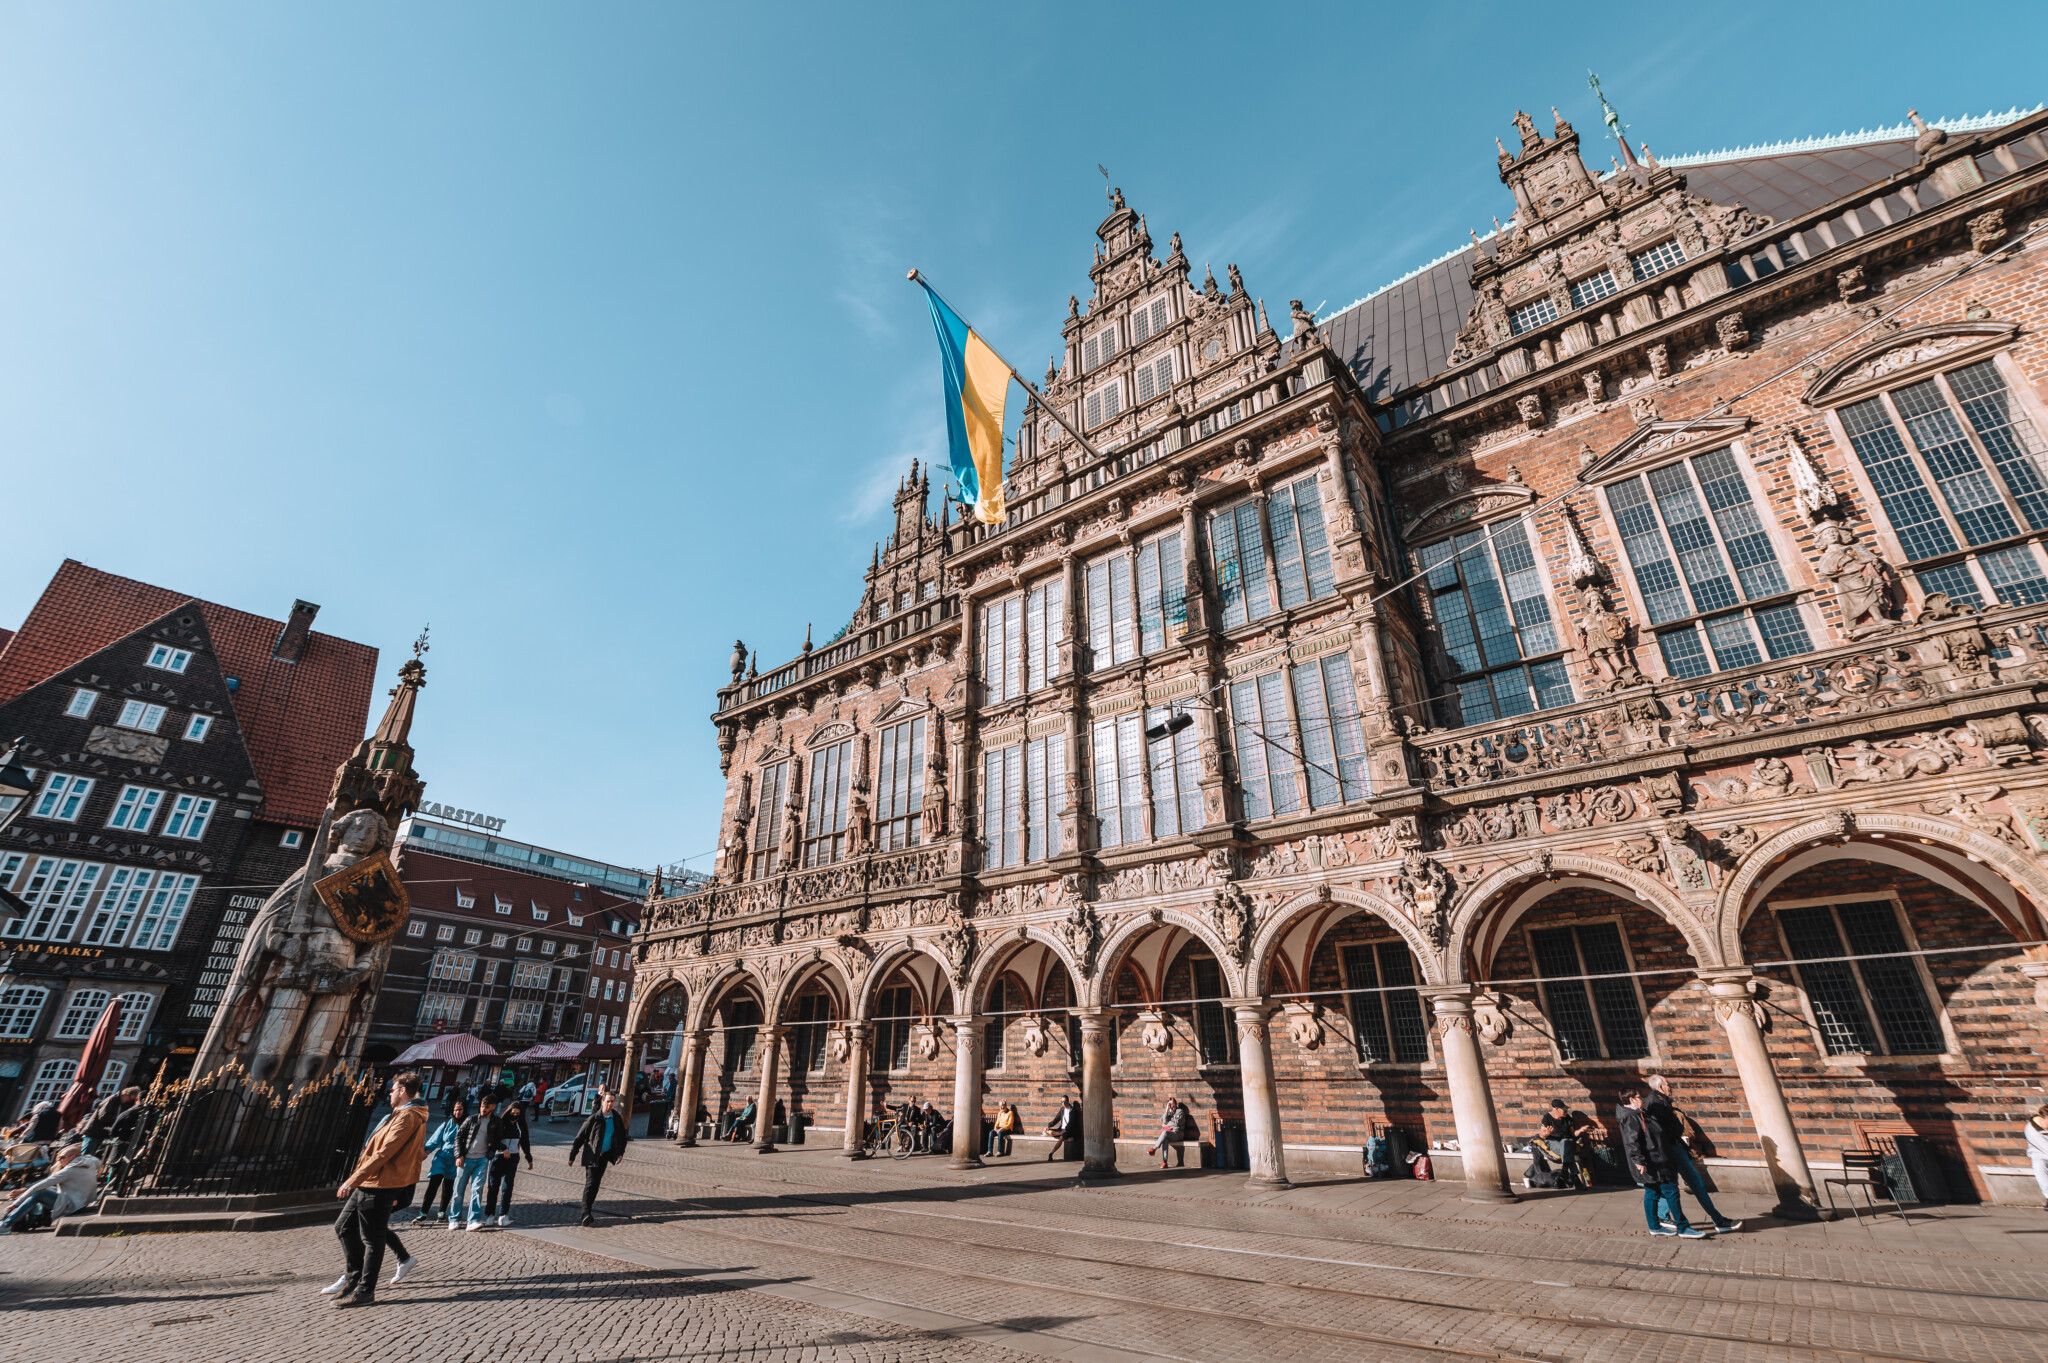 Das Rathaus gehört zu den besten Sehenswürdigkeiten Bremens